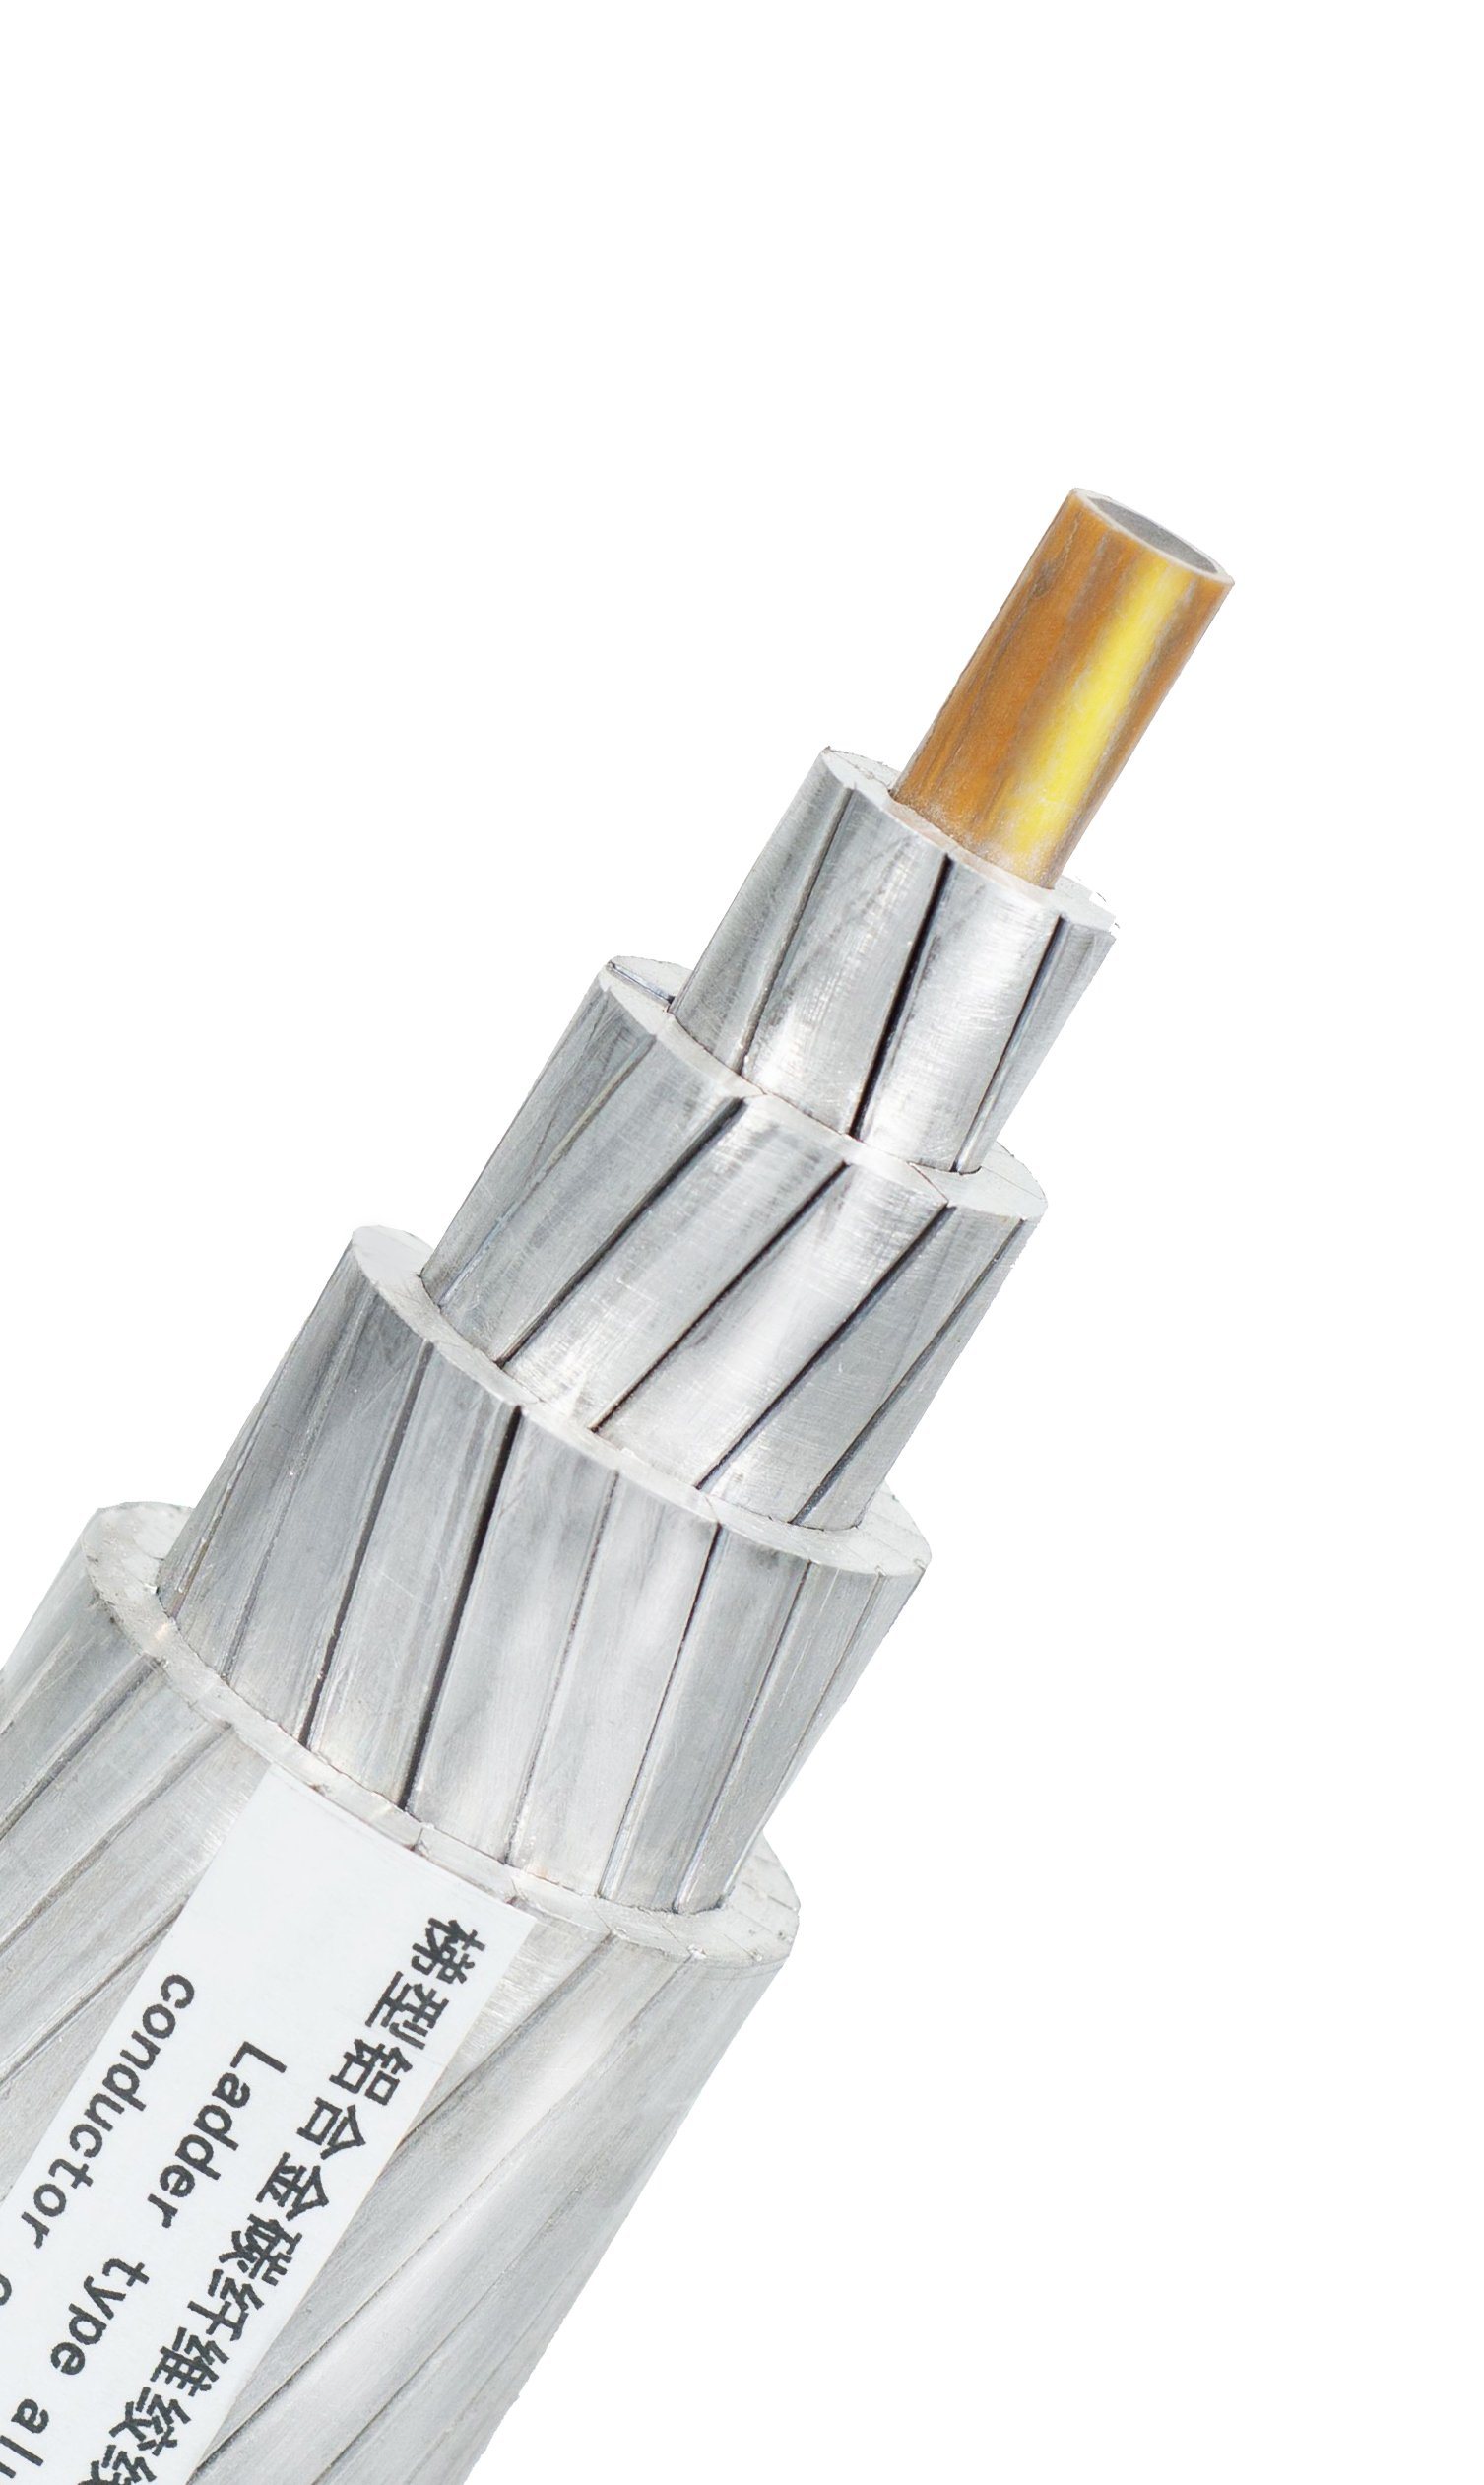 
                Venda a quente Aacsr Conductor Liga de Alumínio com Alma de Aço norma DIN 48206 condutores nus ociosos de catenárias
            